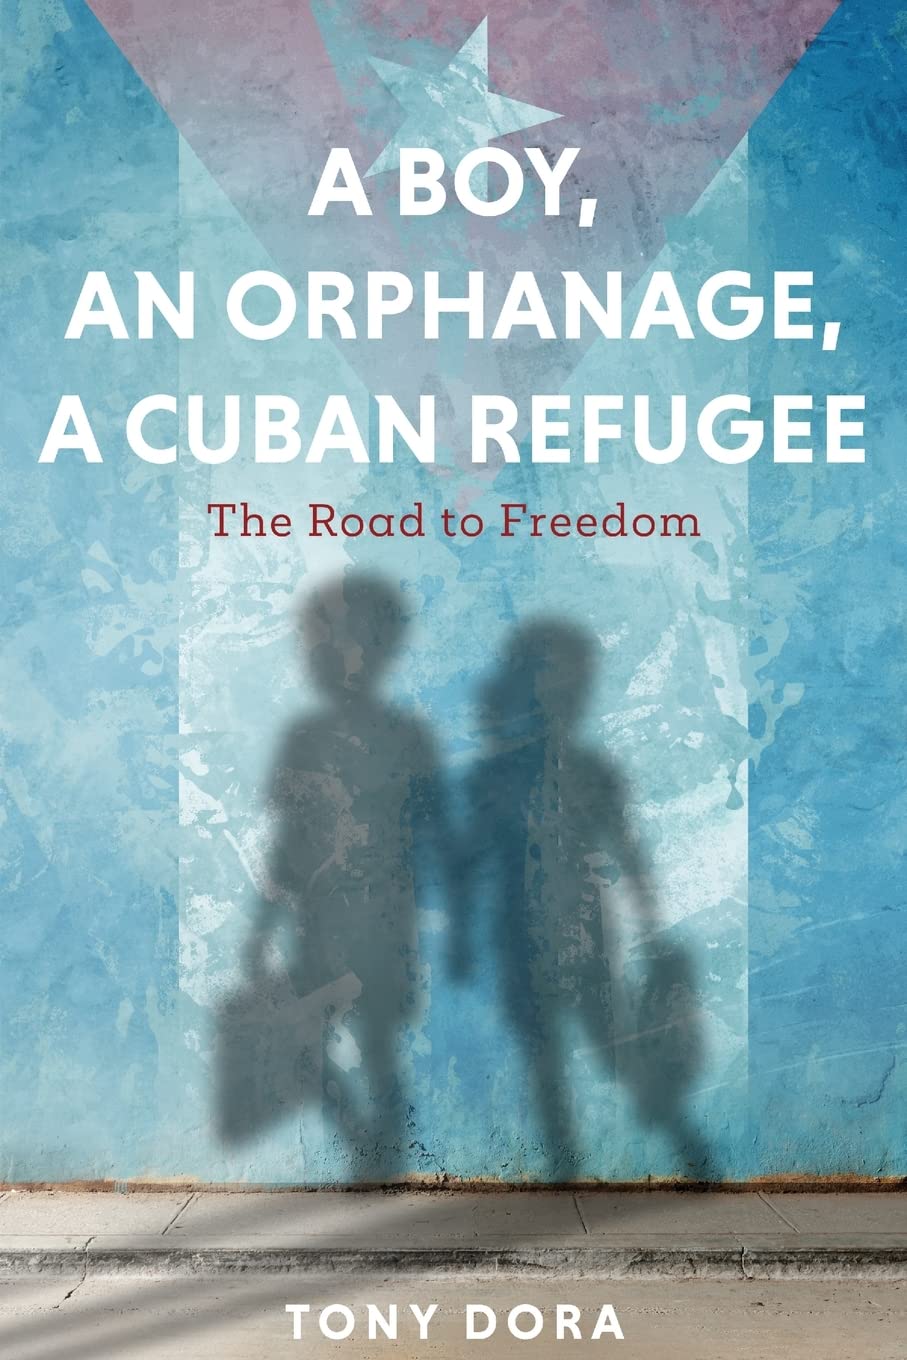 A Boy, an Orphanage, a Cuban Refugee